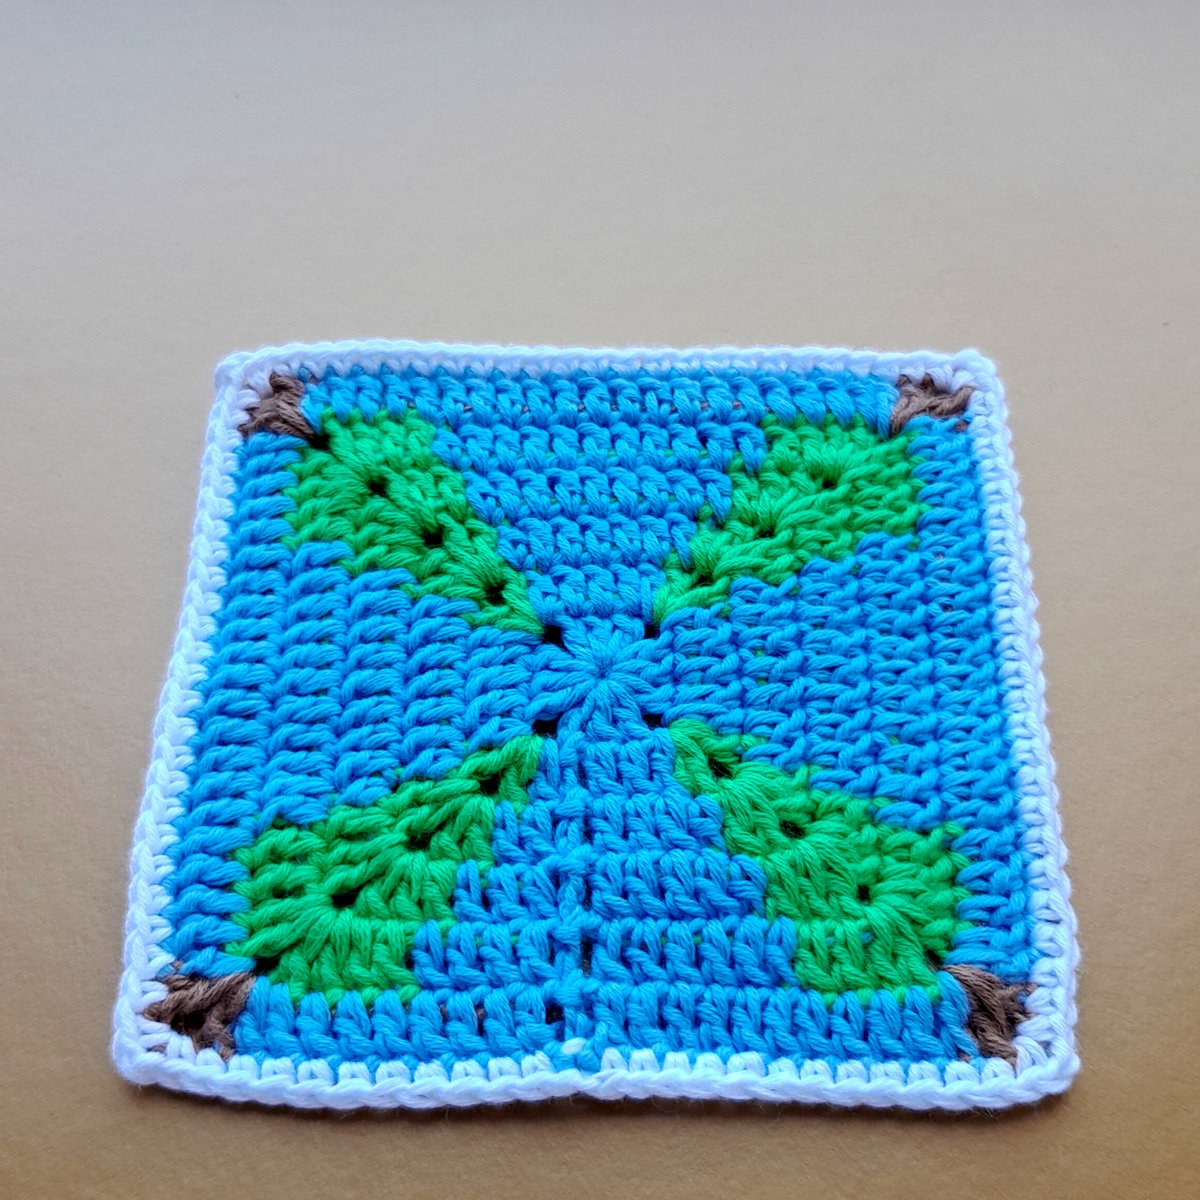 Christmas Granny Square Pattern, Granny Square Christmas Tree Pattern
etsy.com/listing/154912…

#Etsy #EtsyShop #EtsySeller #EtsySocial #crochet #GrannySquarePattern #crochetpattern #CrochetPatterns #grannysquare #grannysquares #crocheter #crocheting #crochetideas